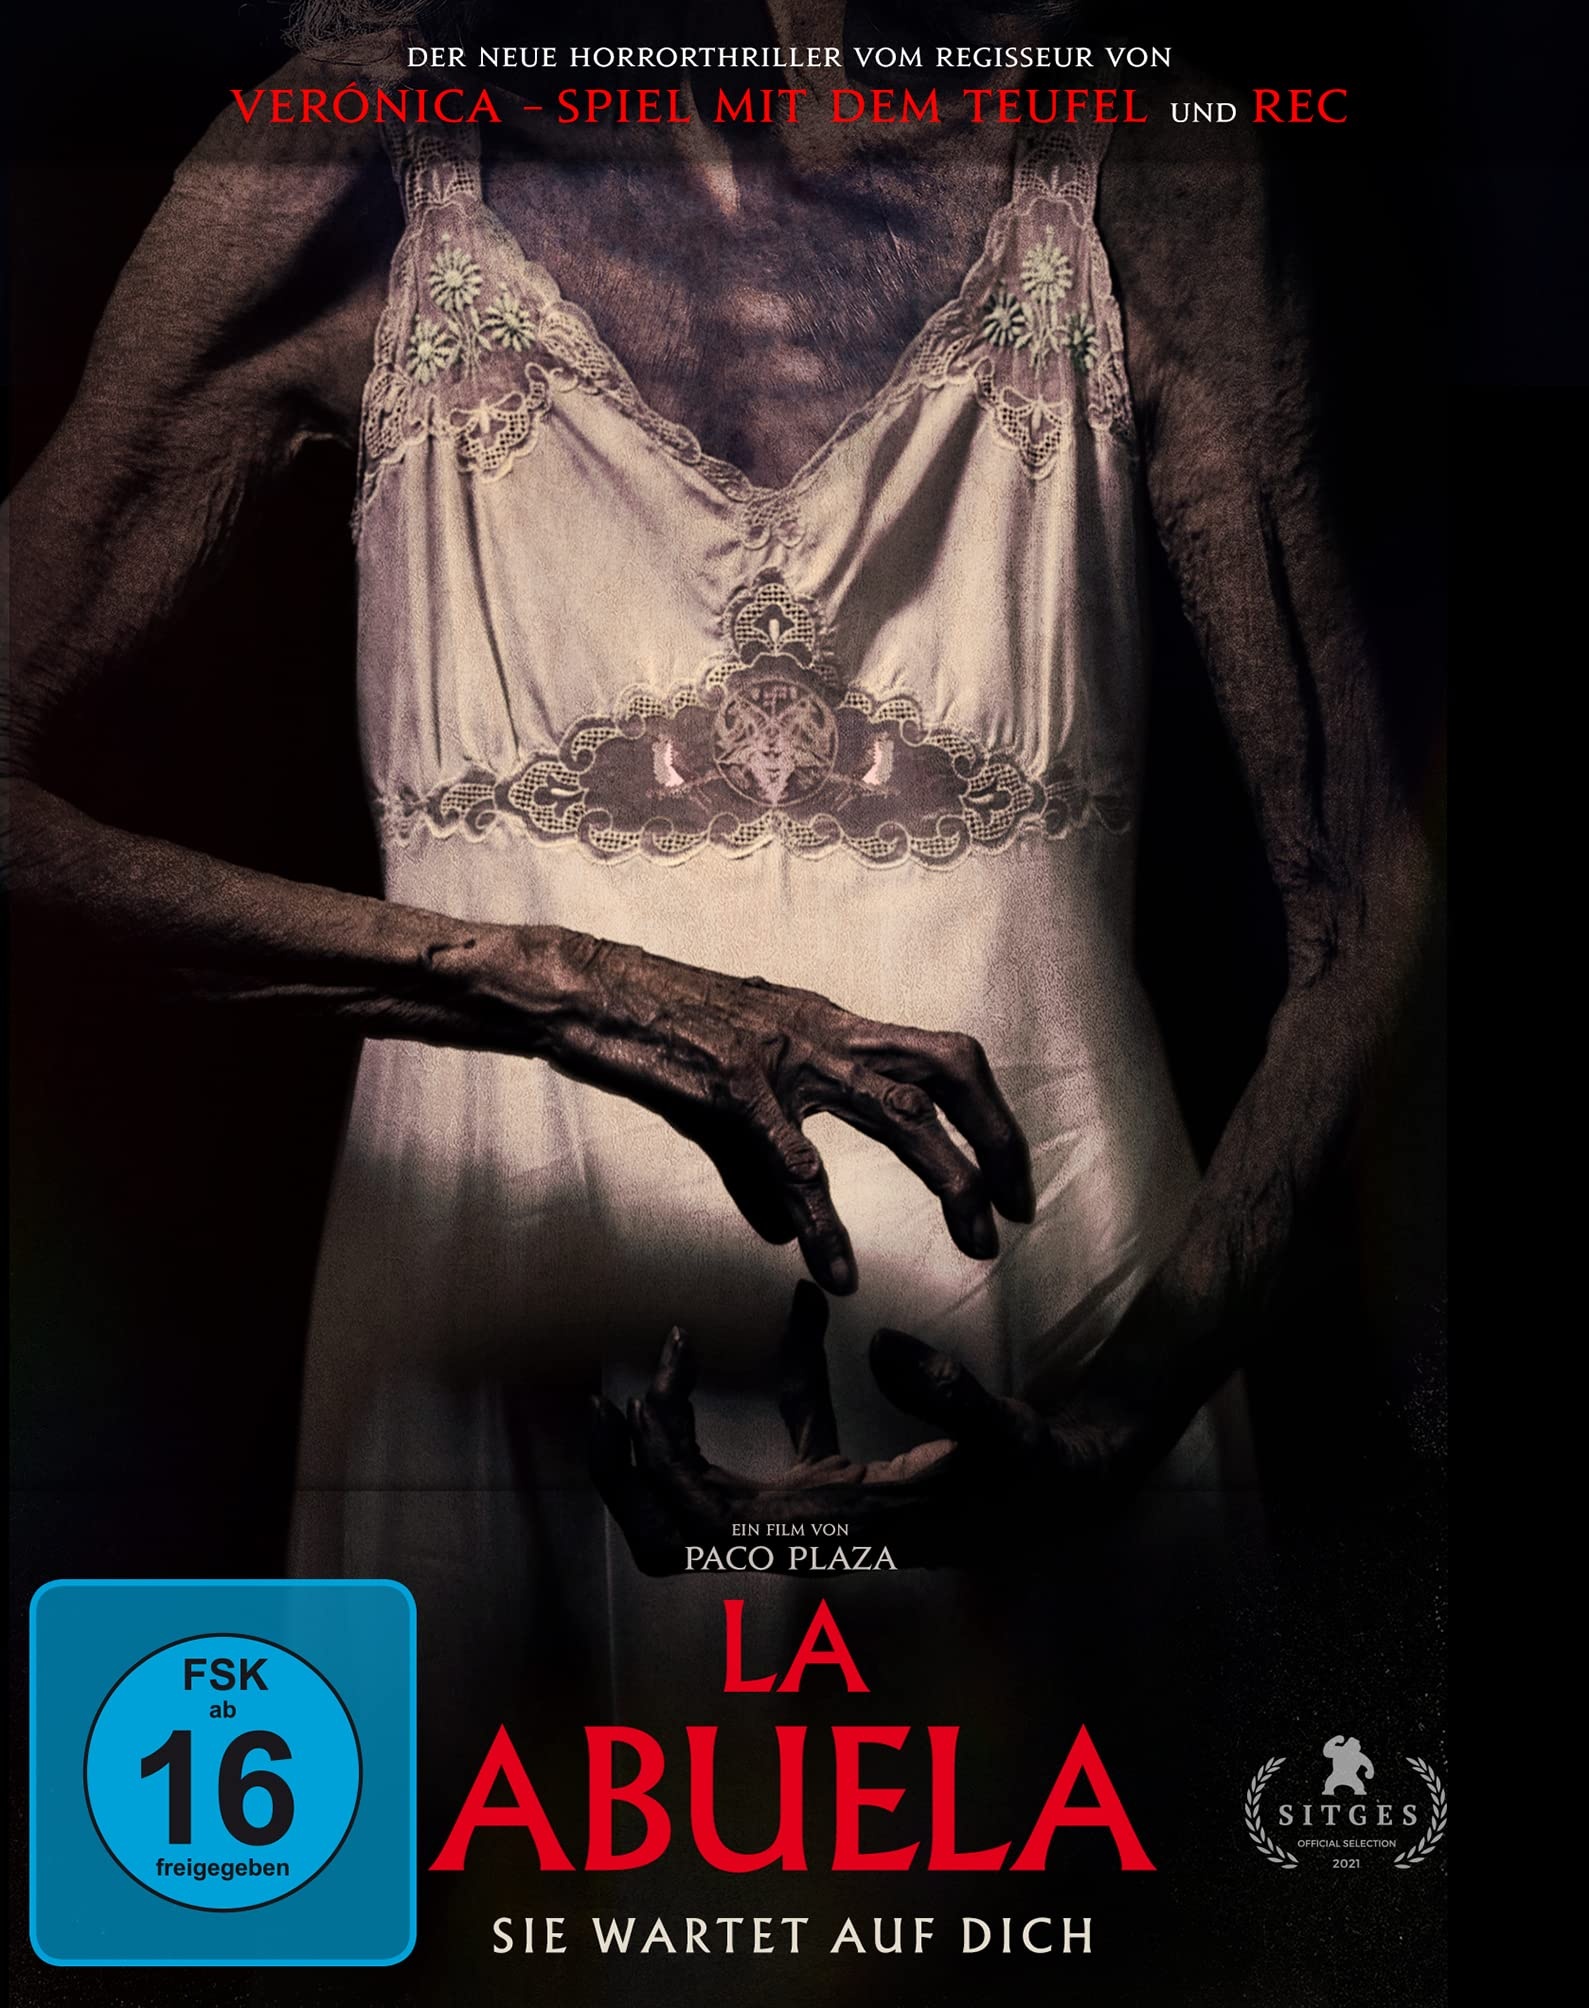 La Abuela - Sie wartet auf dich - Mediabook (+ DVD) [Blu-ray] (Neu differenzbesteuert)